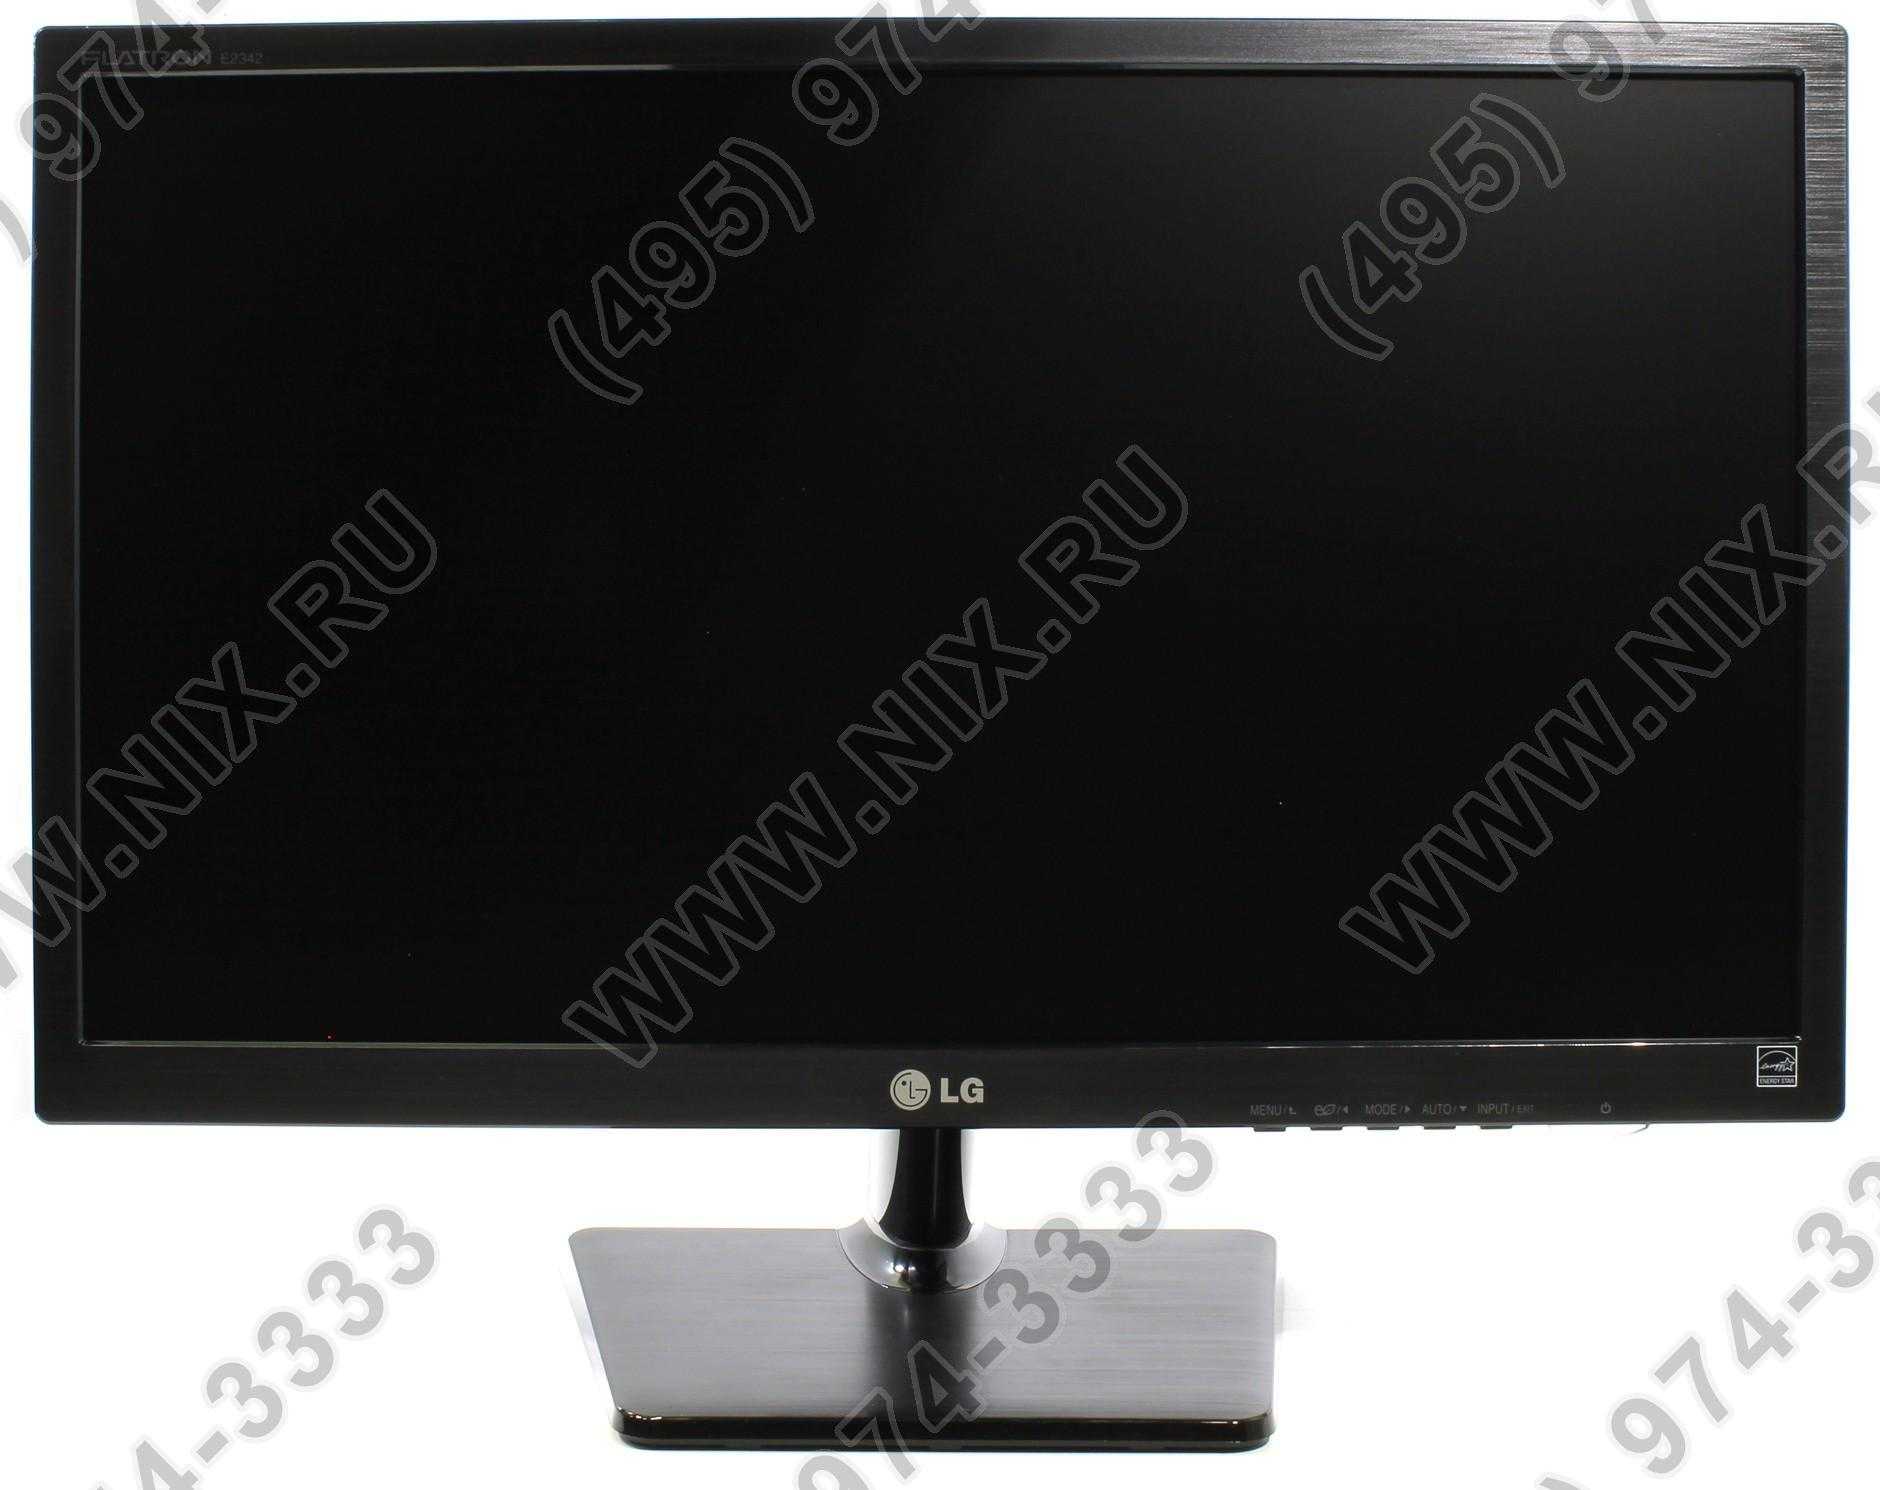 Монитор LG E2342C - подробные характеристики обзоры видео фото Цены в интернет-магазинах где можно купить монитор LG E2342C